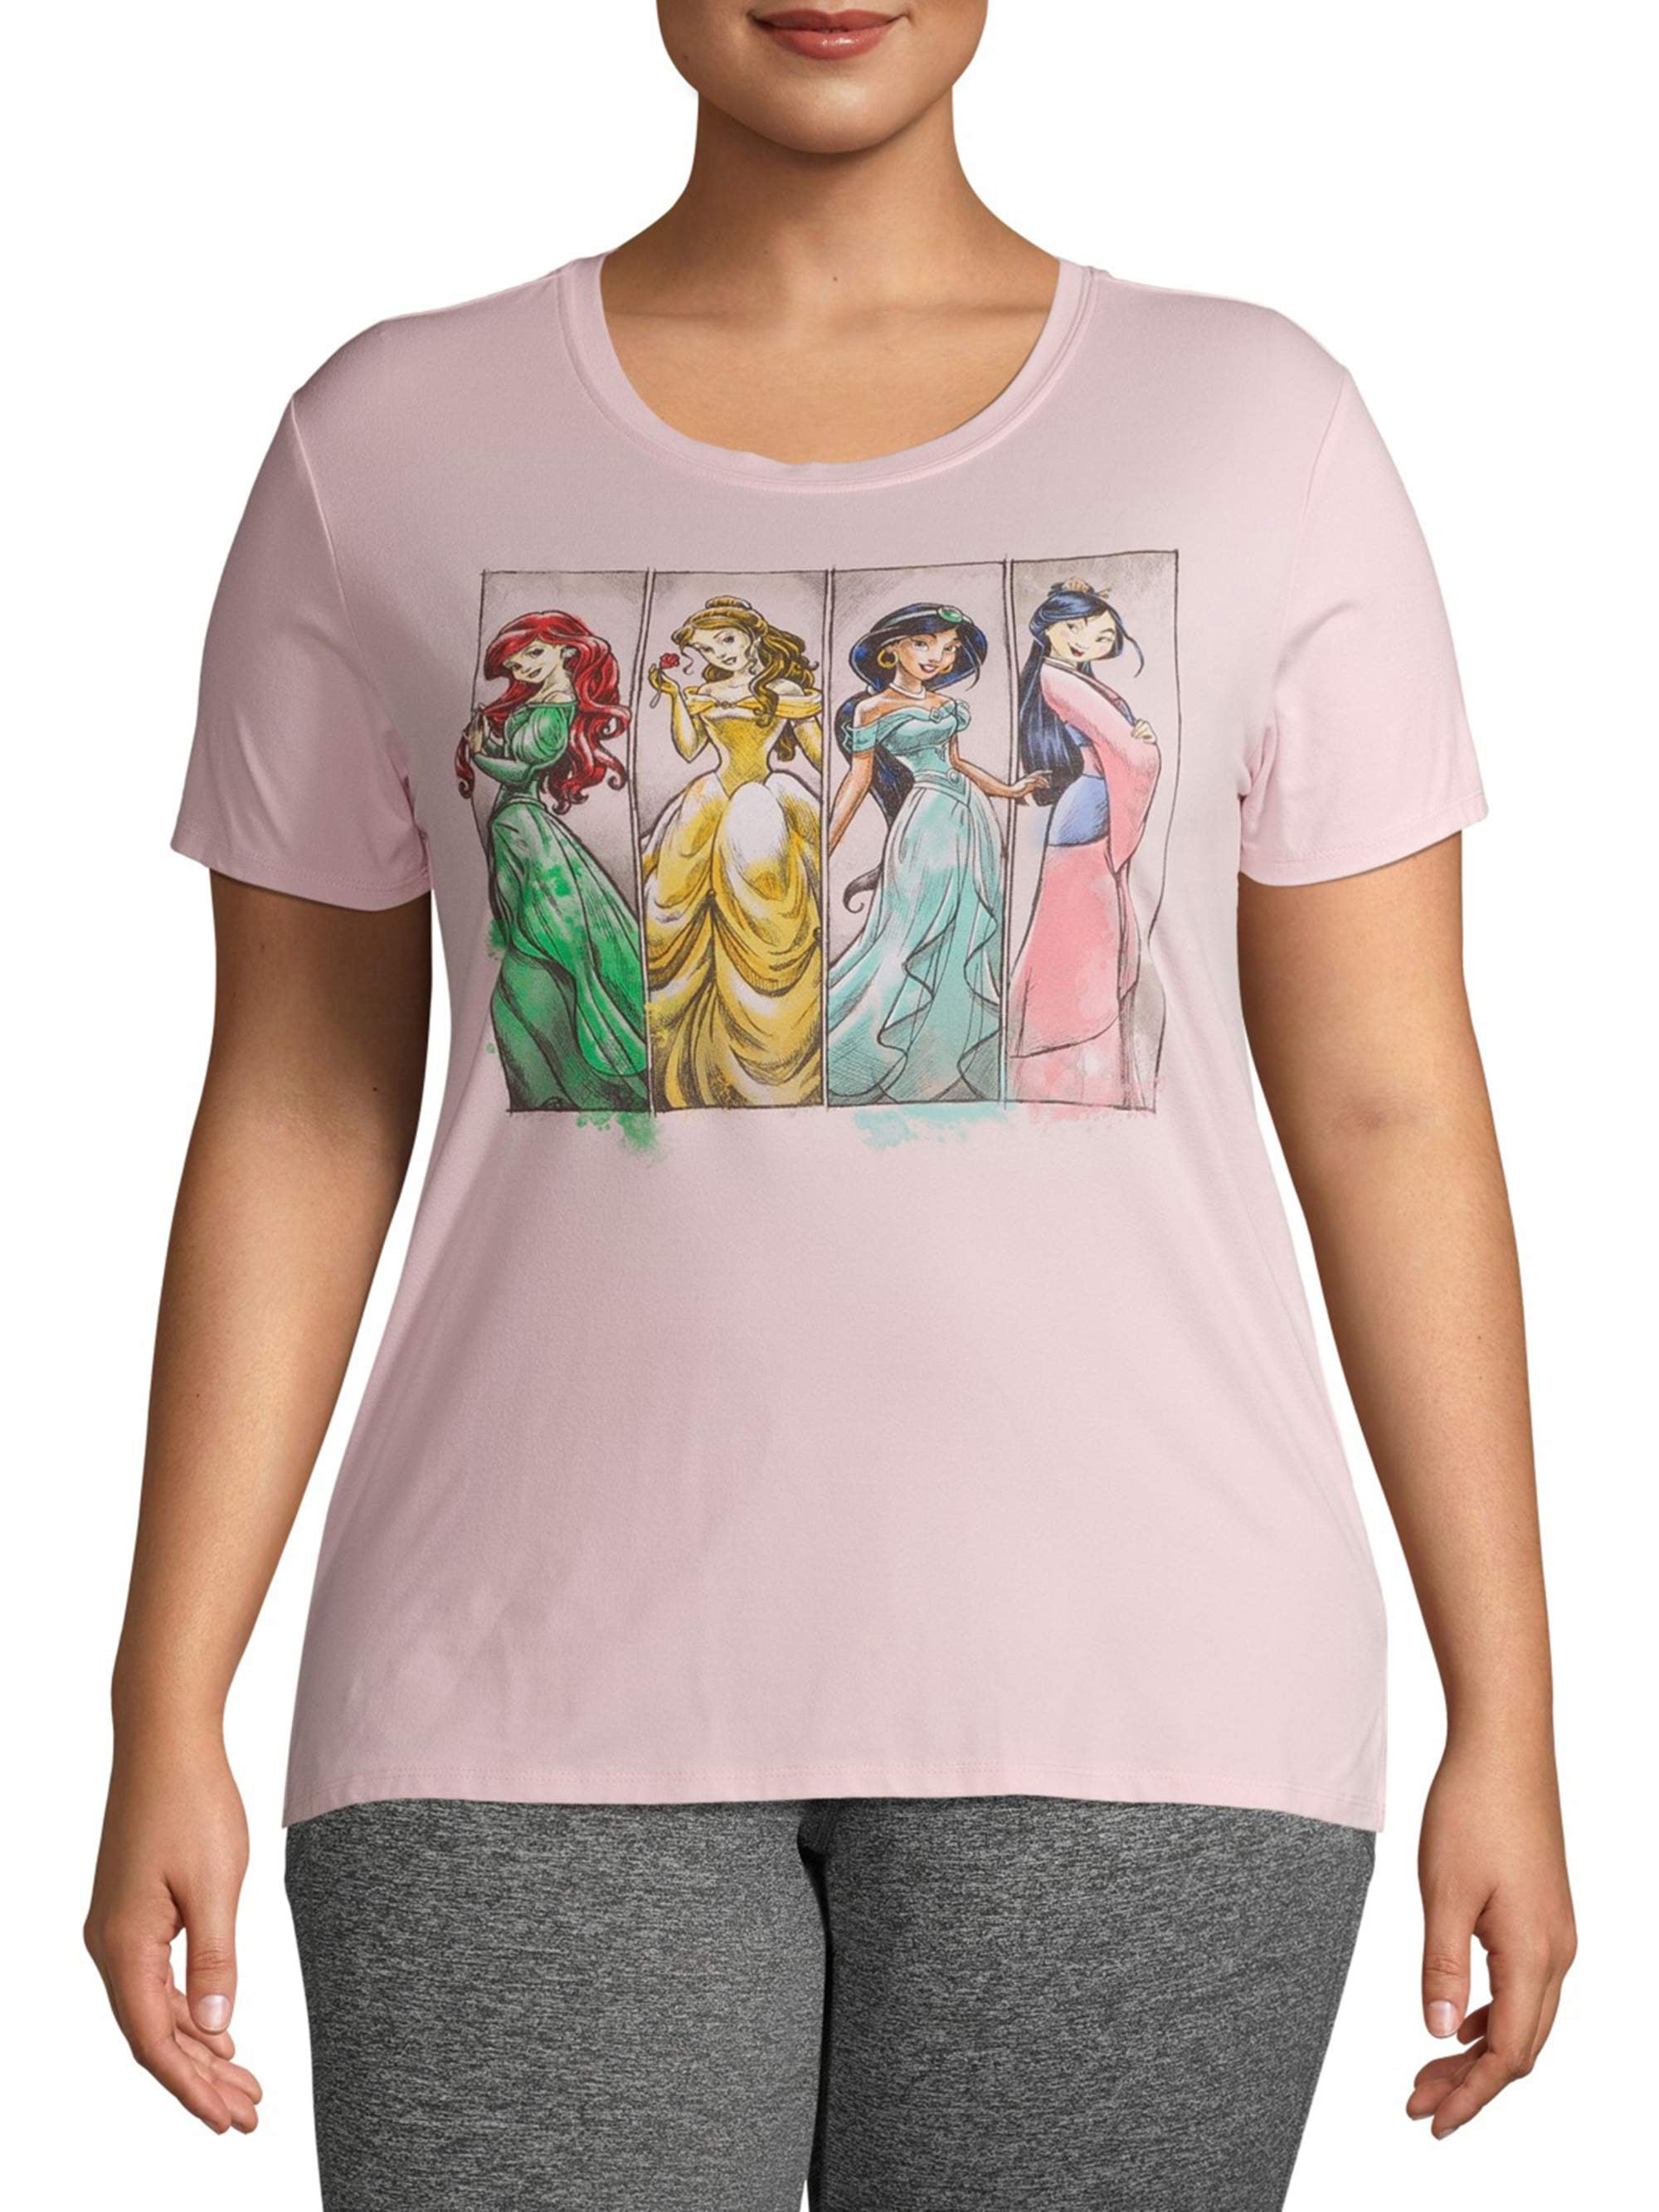 Unisex Squad Goals Disney Princess Adult Funny Disney Shirt|Kids Unisex Shirt|Disney Princesses #Squadgoals